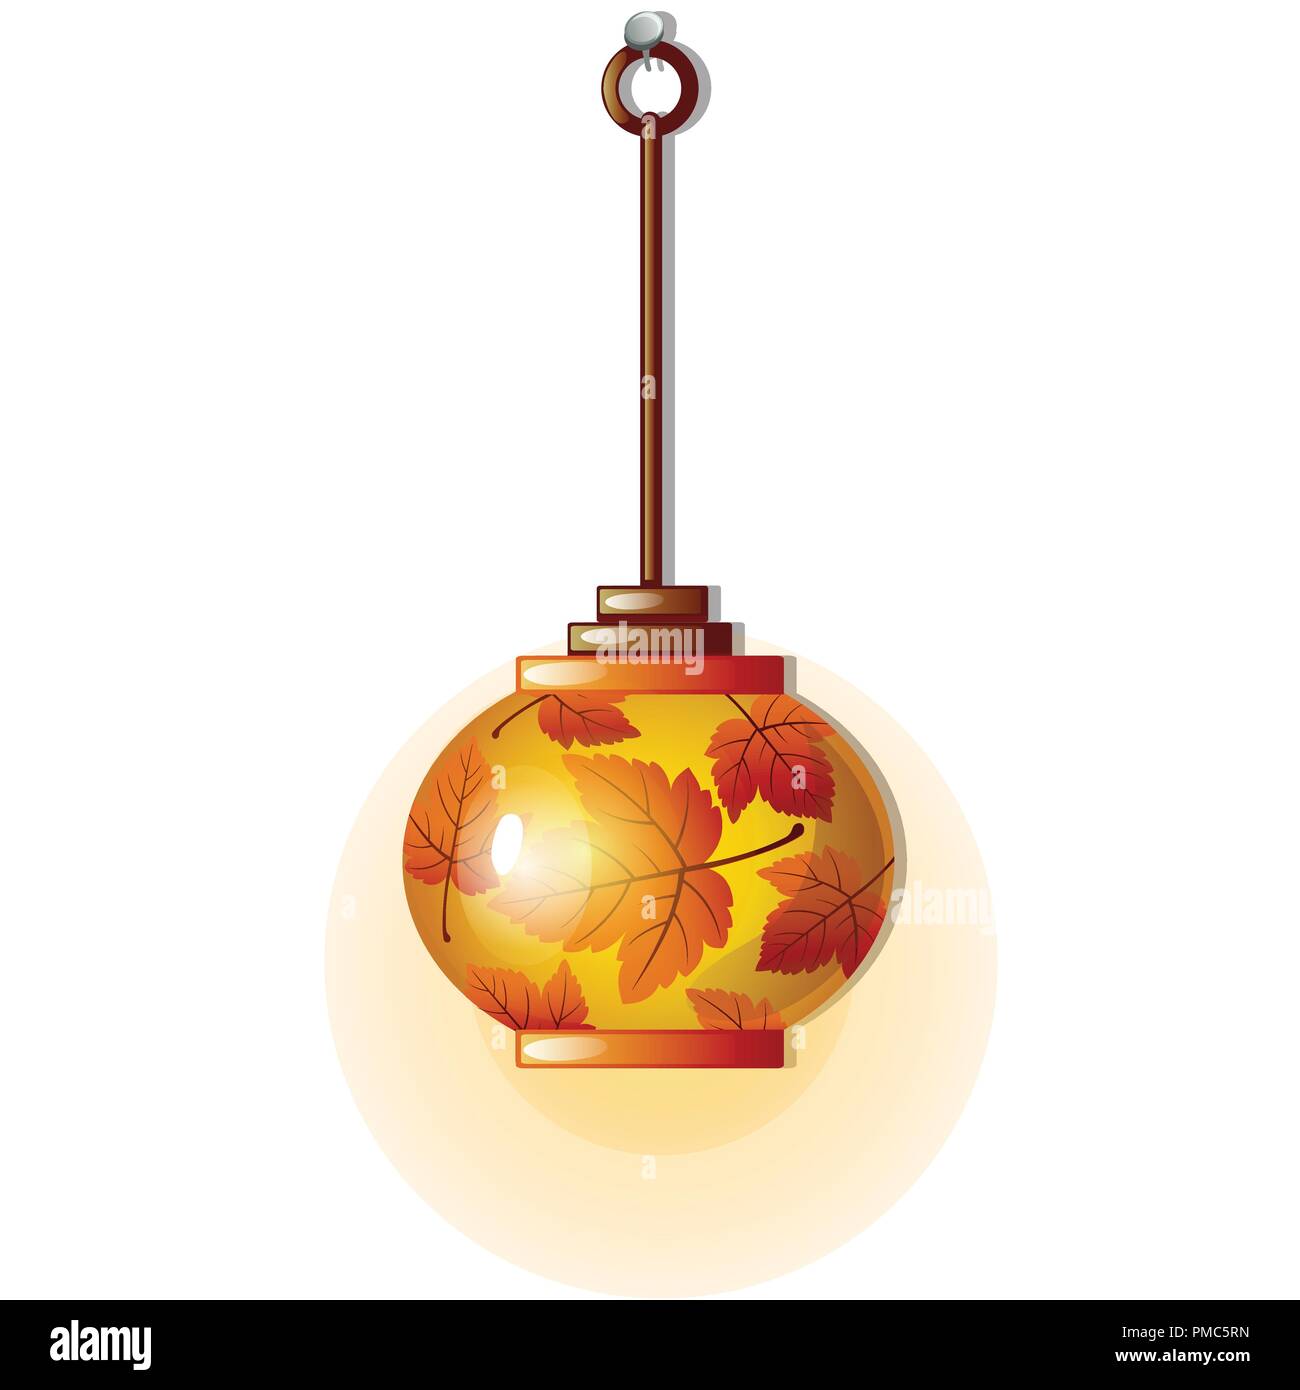 Elektrische Lampe mit Glas Lampenschirm mit Ornament in Form der Blätter im Herbst. Element der Küche Innenausbau auf Thema Der goldene Herbst- und Erntedankfest auf weißem Hintergrund. Vektor. Stock Vektor